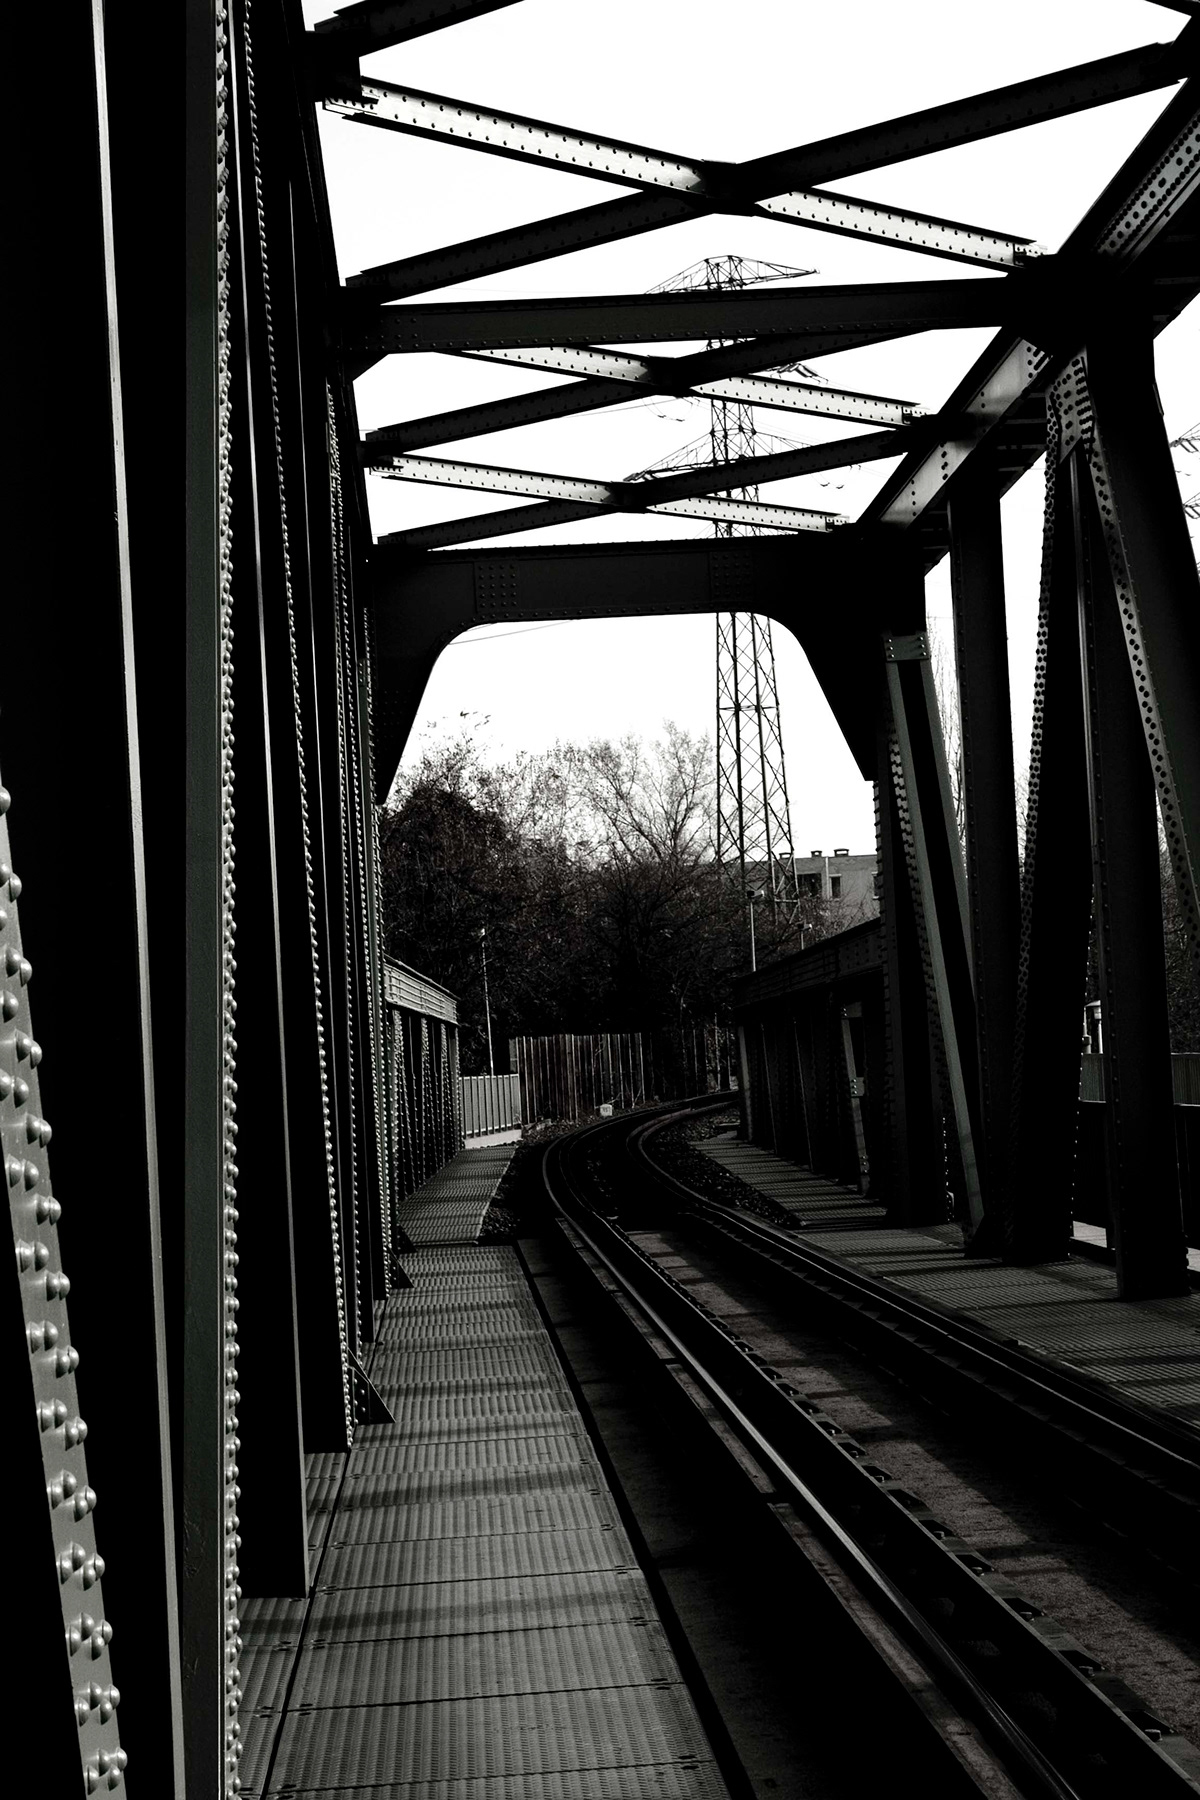 magány solitude photo bridge